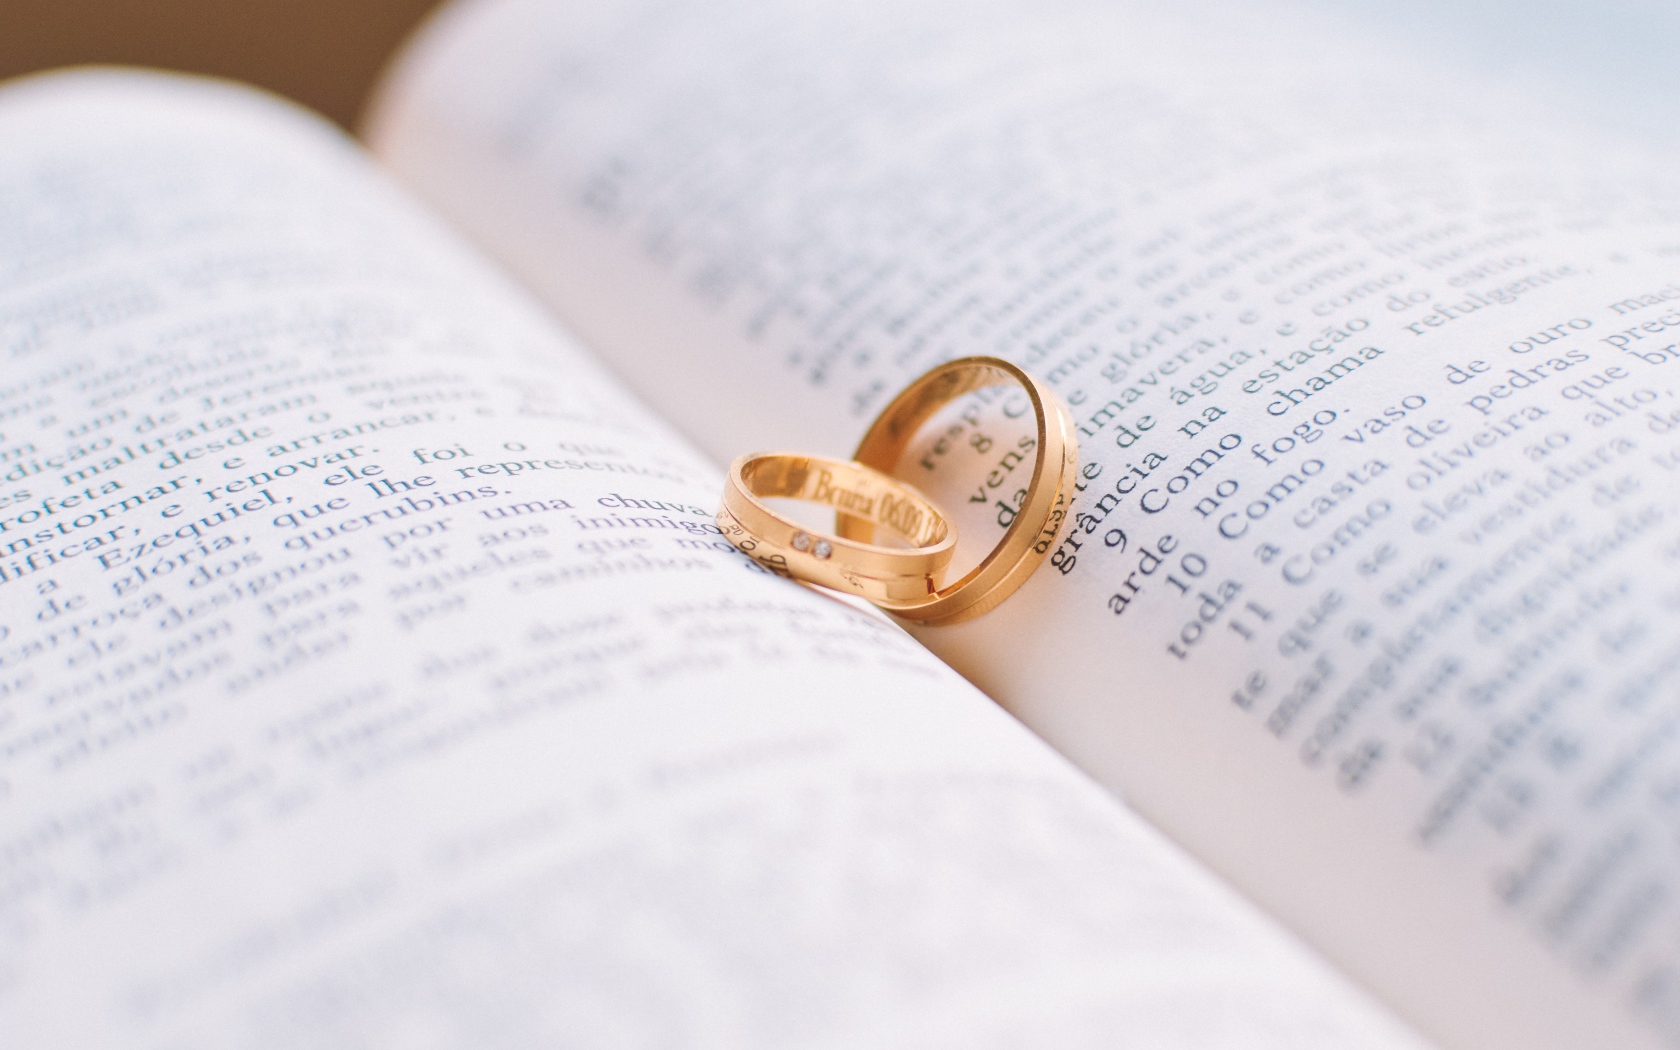 Два золотых обручальных кольца лежат на книге 